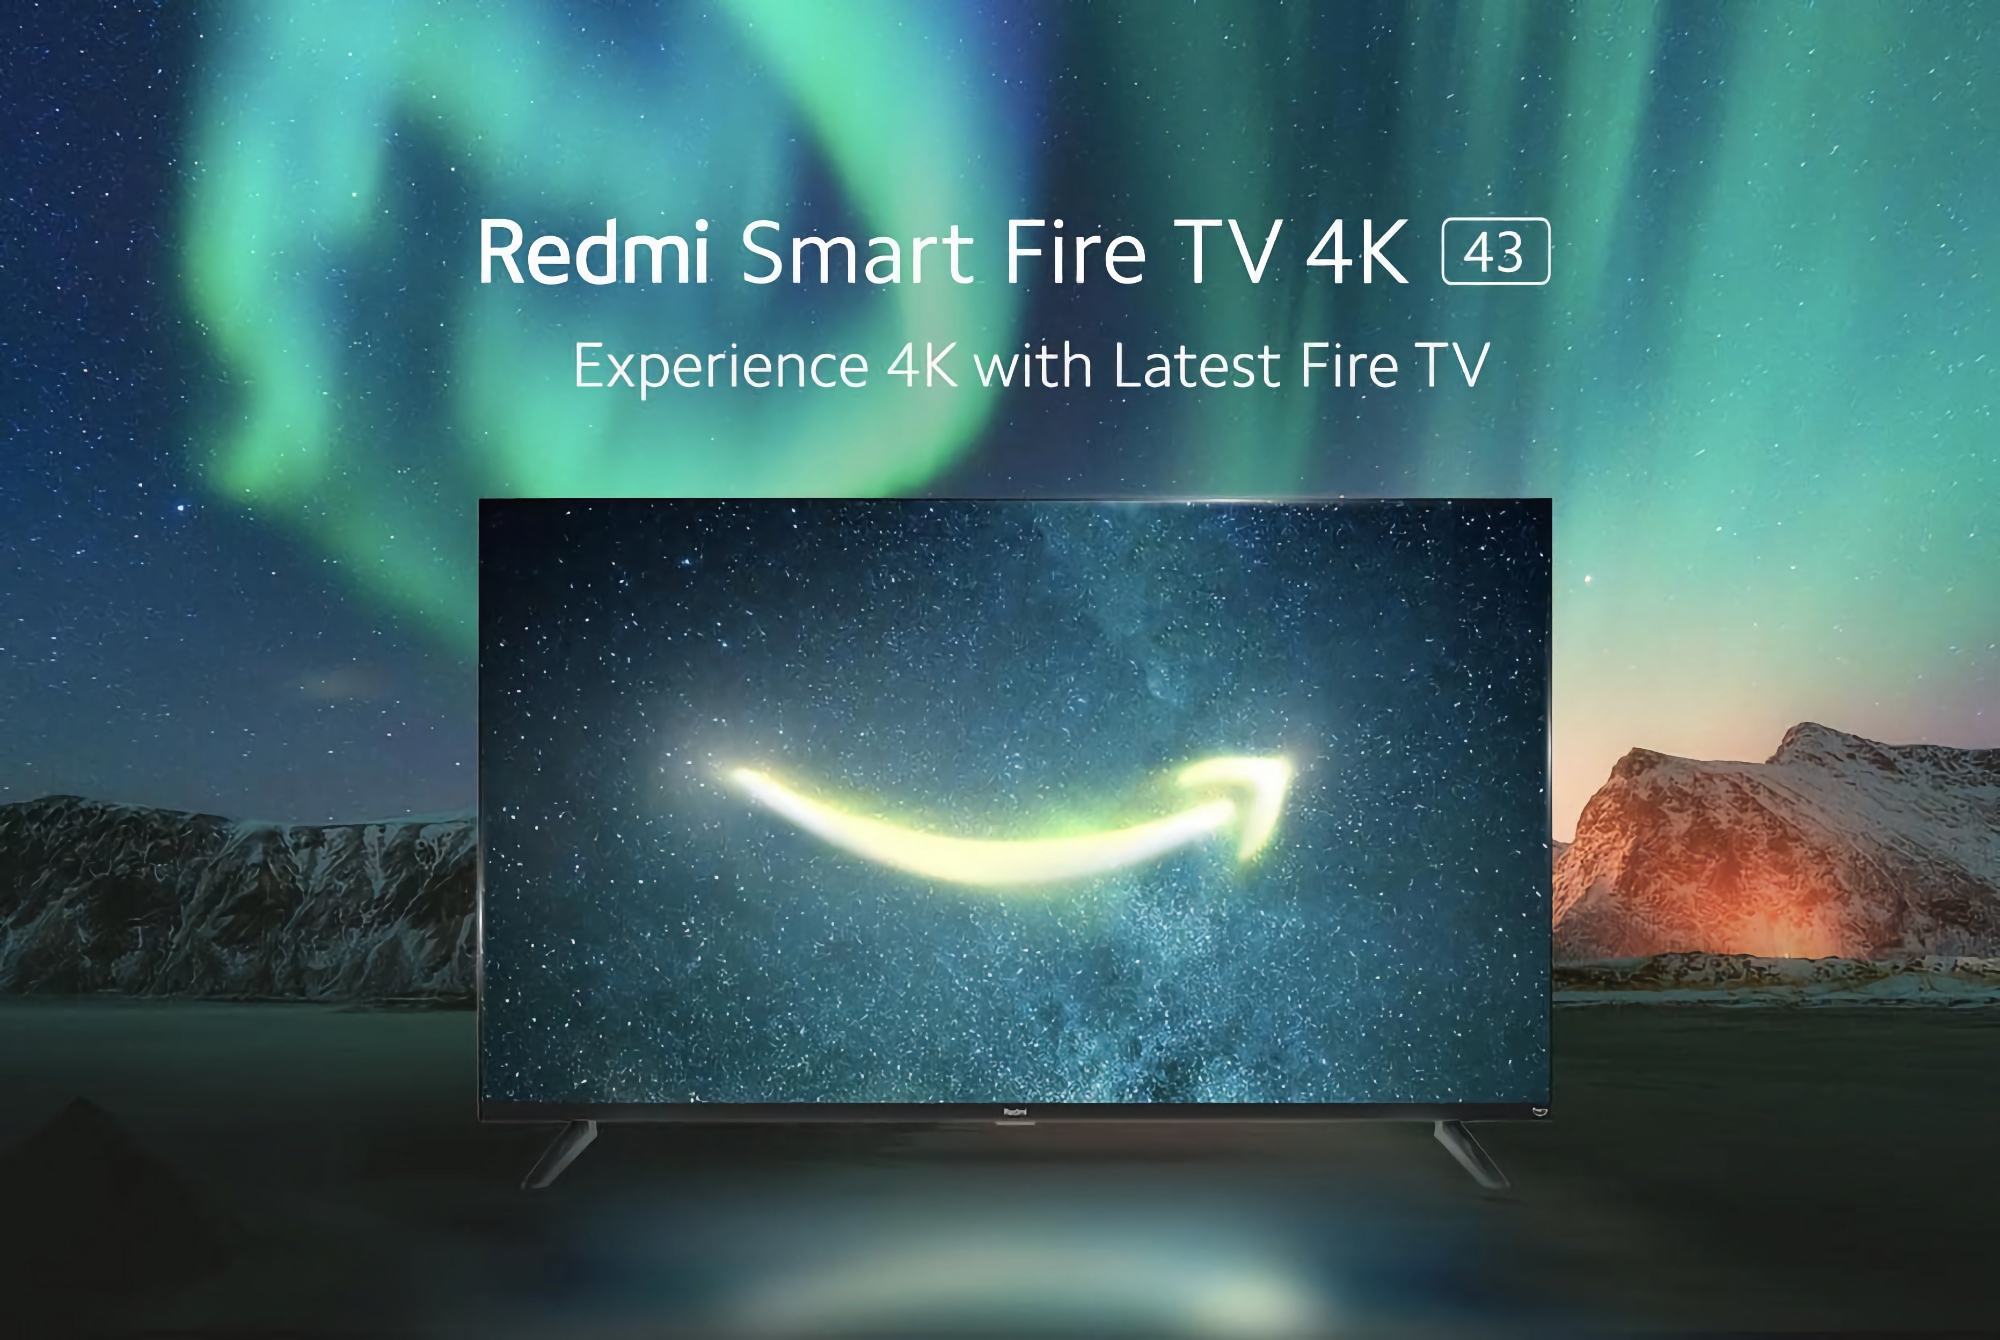 Redmi a dévoilé une Smart Fire TV 4K de 43 pouces avec Fire TV OS à bord.